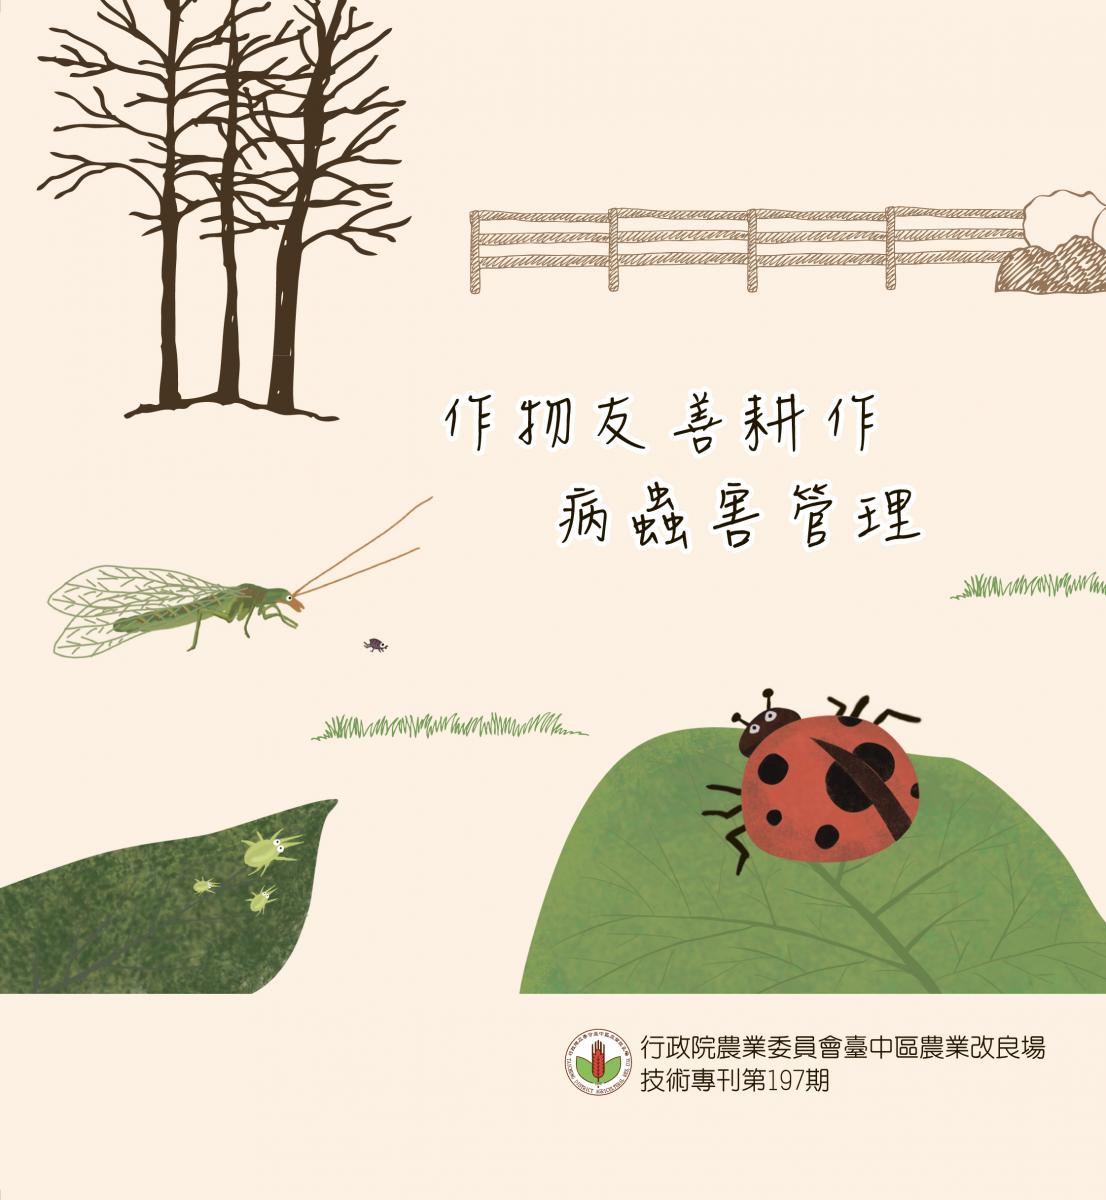  台中區農業專訊第197期 -作物友善耕作病蟲害管理出刊了 